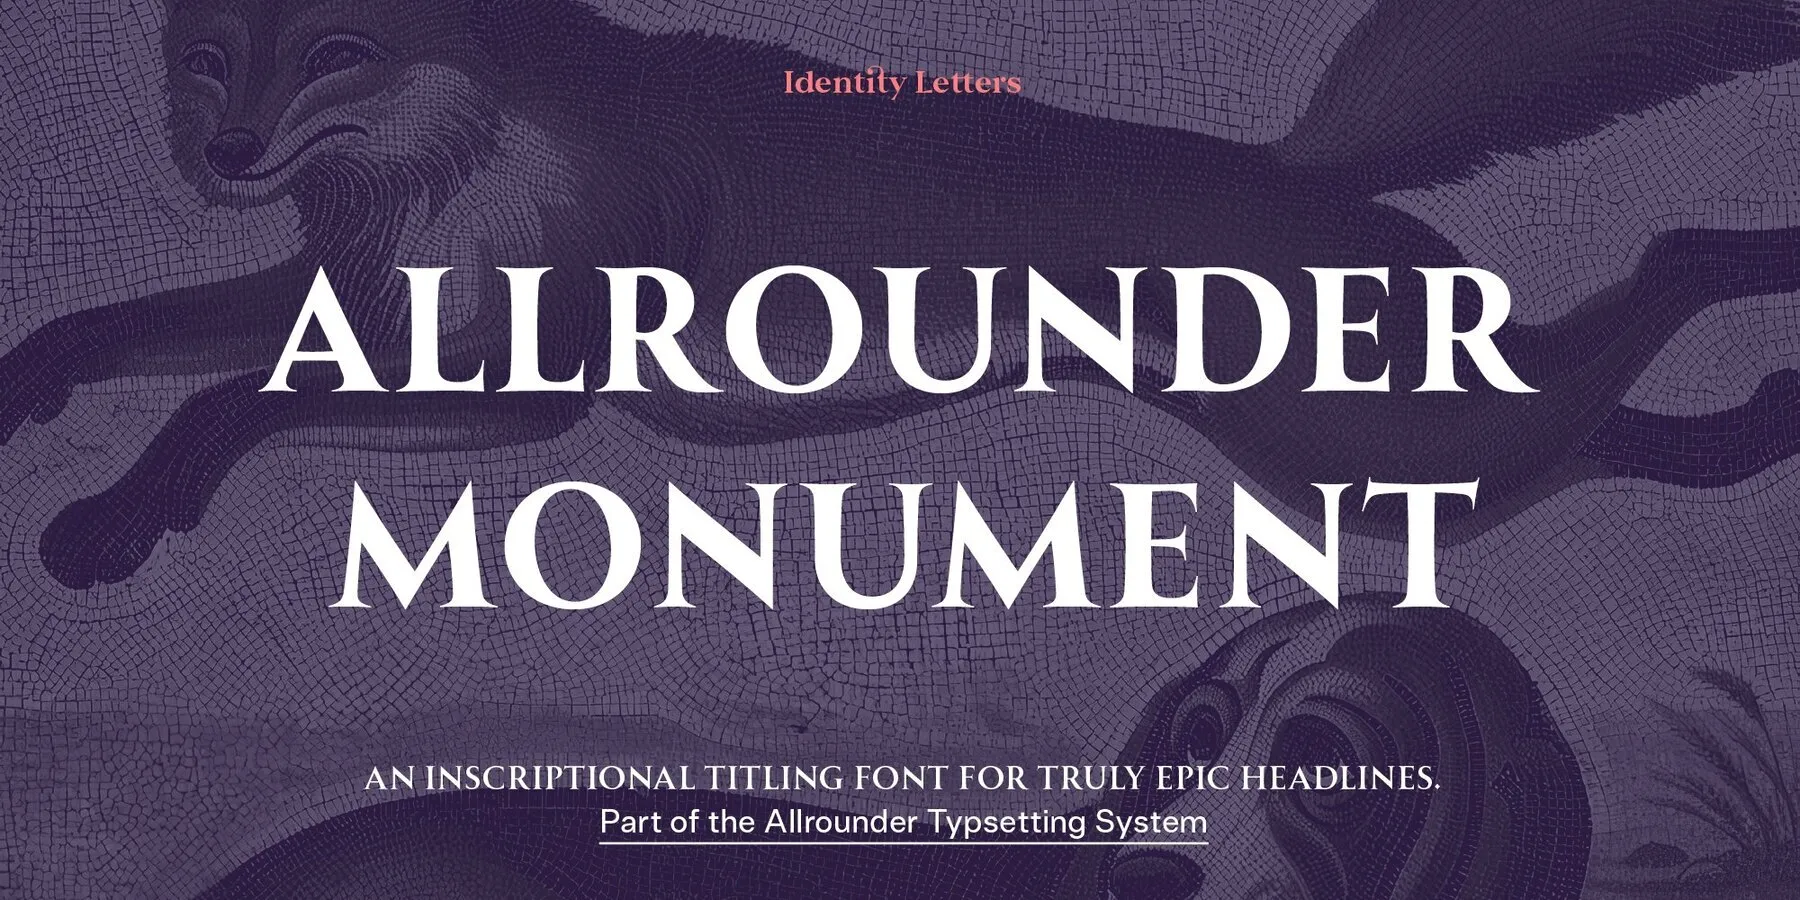 Allrounder Monument